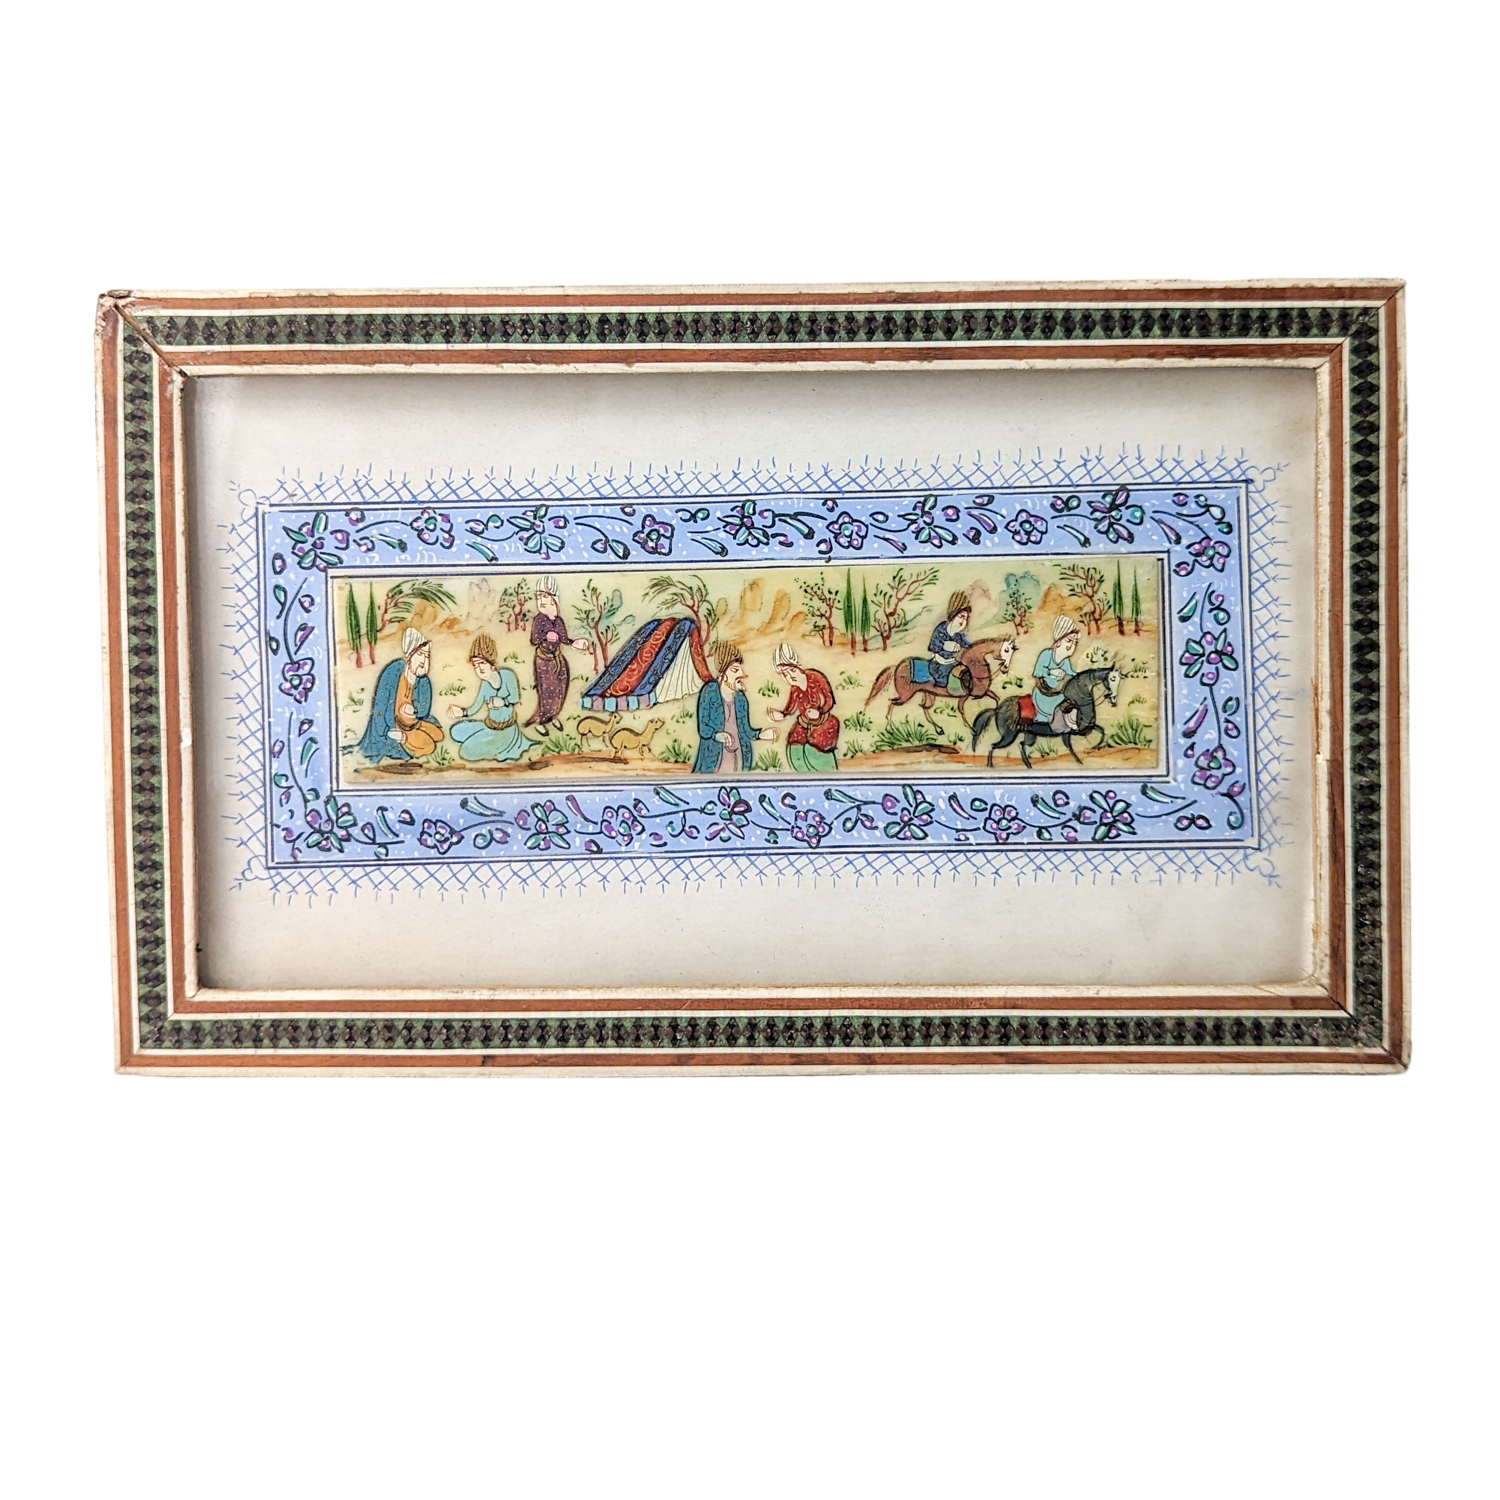 Vintage Persian Original Painted on Bone in Khatam Frame